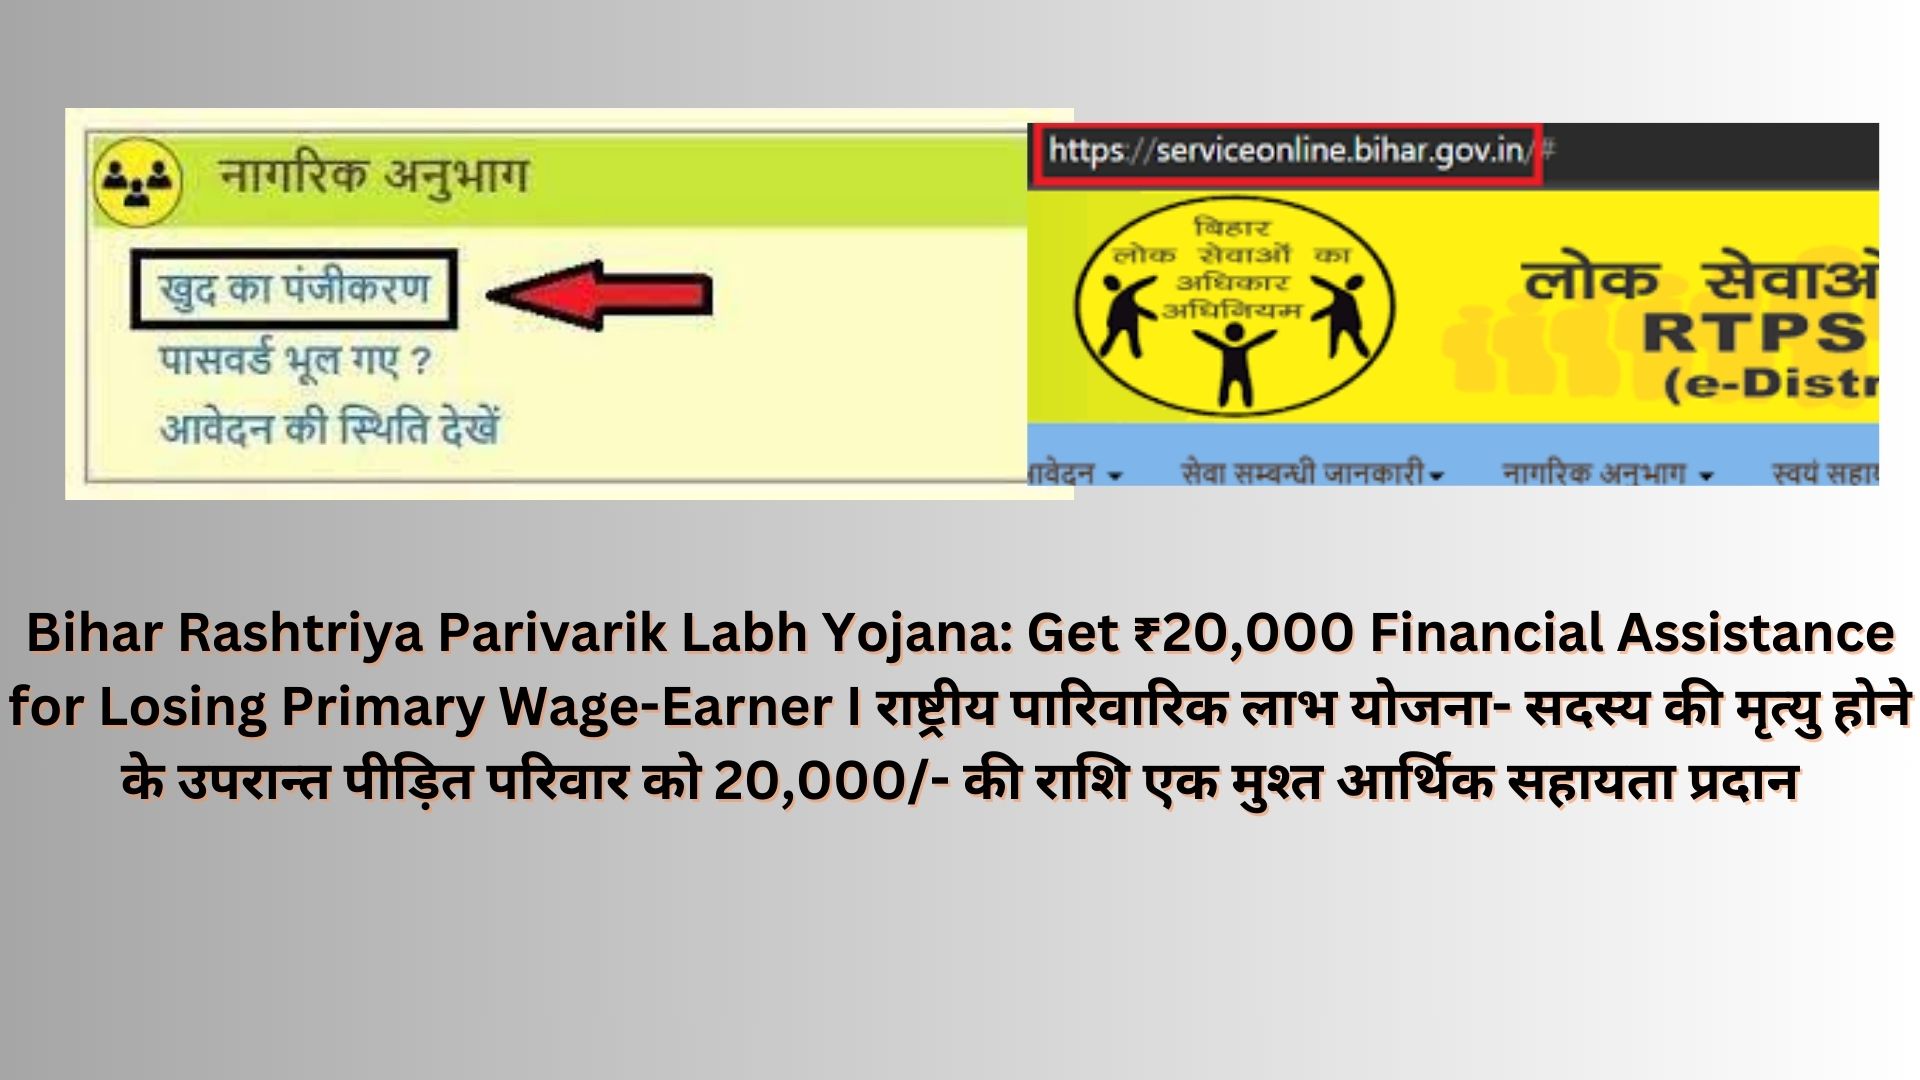 Bihar Rashtriya Parivarik Labh Yojana: Get ₹20,000 Financial Assistance for Losing Primary Wage-Earner I राष्ट्रीय पारिवारिक लाभ योजना- सदस्य की मृत्यु होने के उपरान्त पीड़ित परिवार को 20,000/- की राशि एक मुश्त आर्थिक सहायता प्रदान